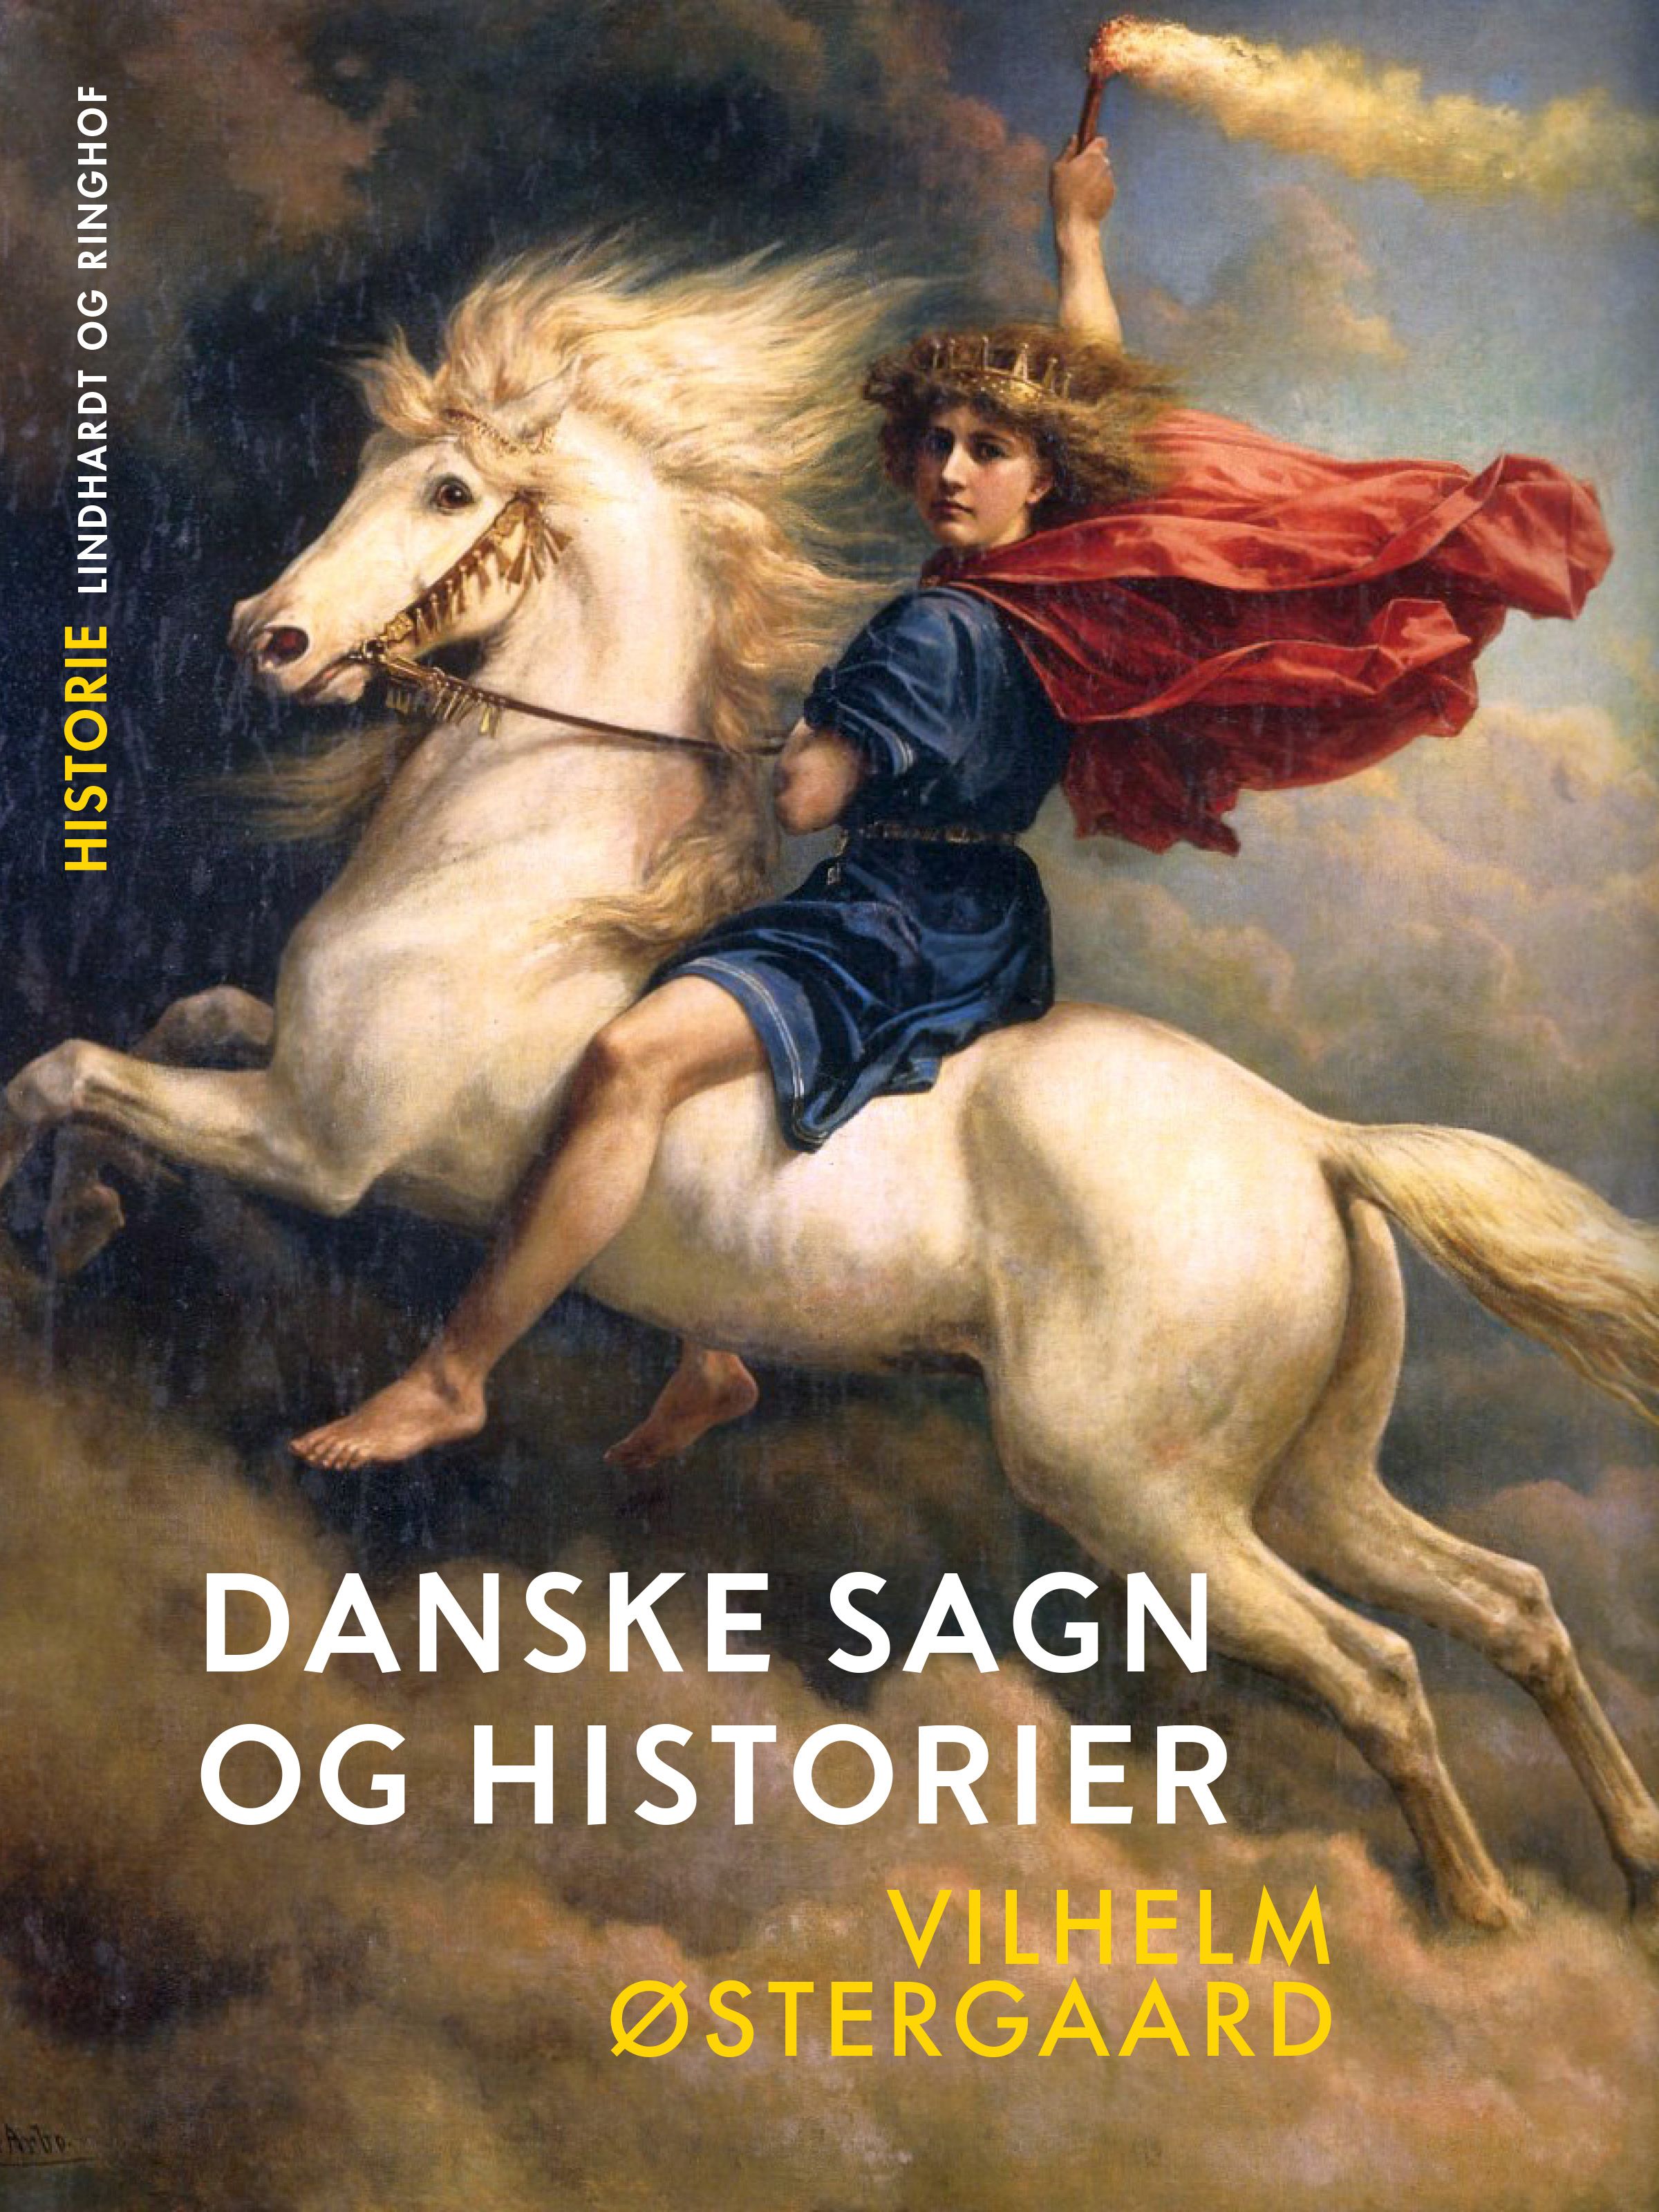 Danske sagn og historier, e-bok av Vilhelm Østergaard